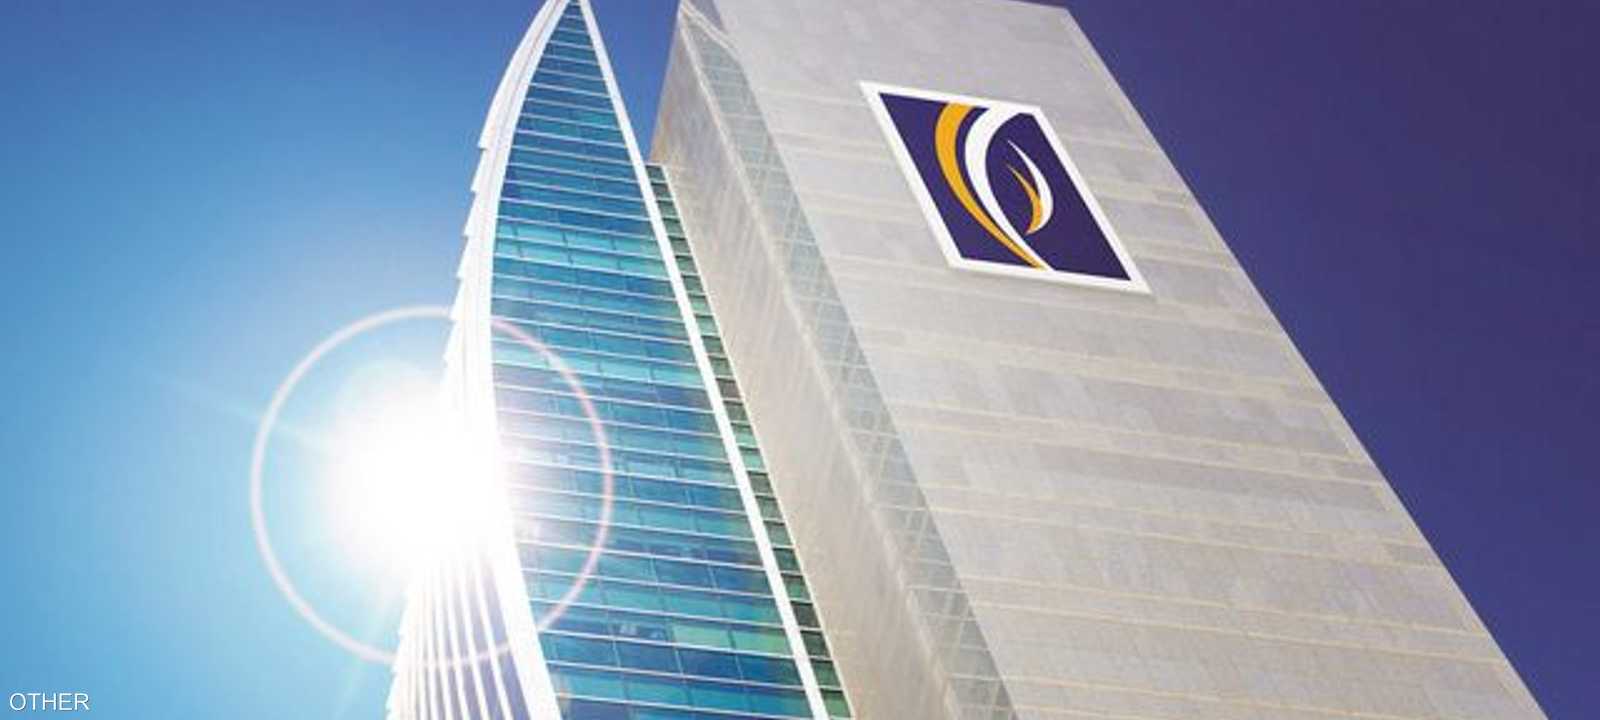 بنك الإمارات دبي الوطني